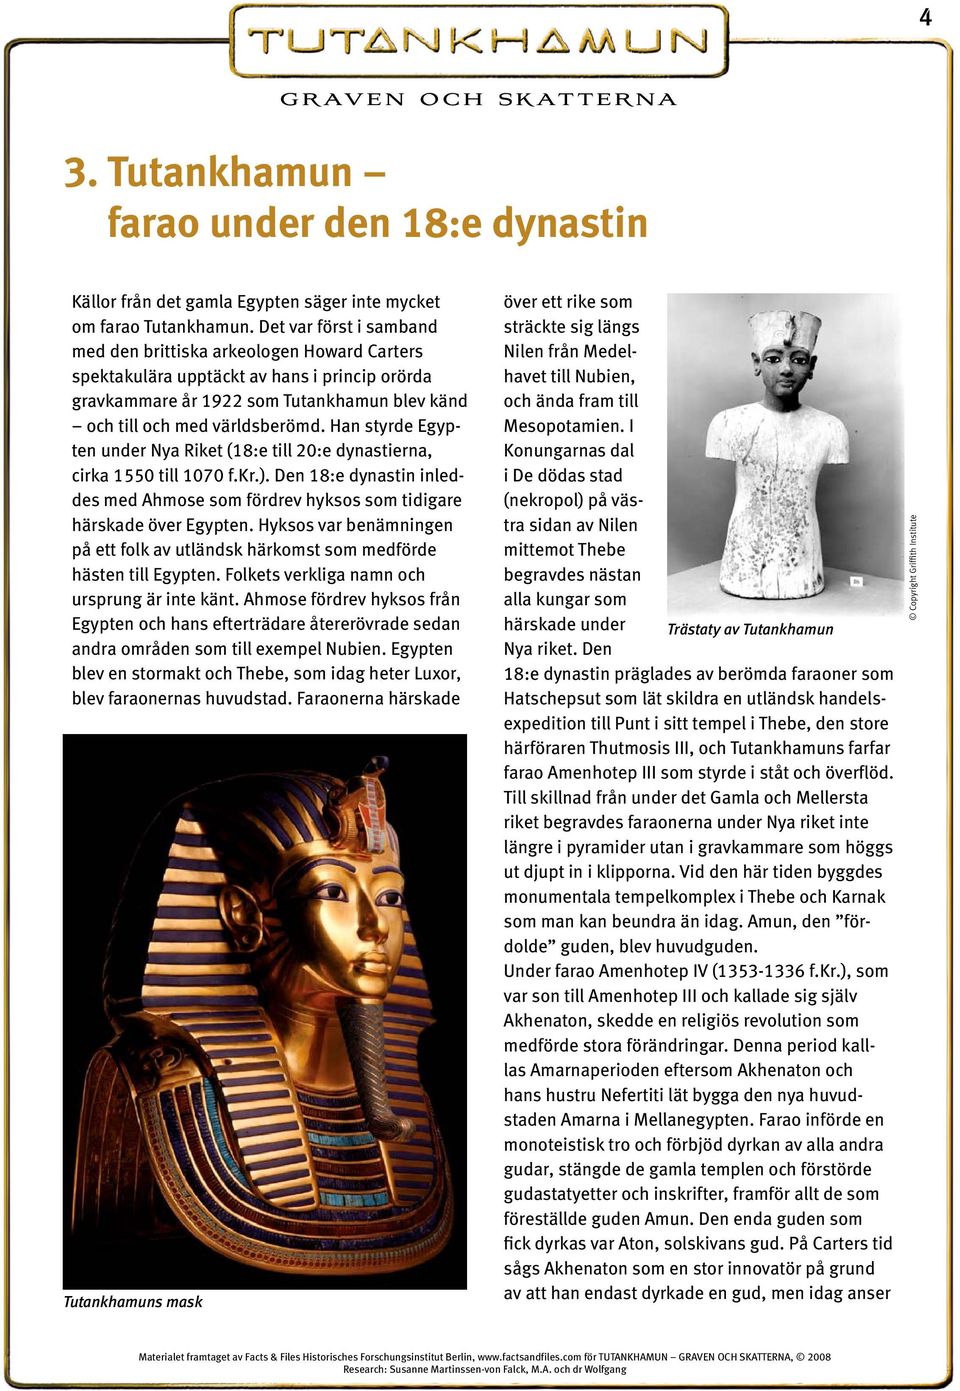 Han styrde Egypten under Nya Riket (18:e till 20:e dynastierna, cirka 1550 till 1070 f.kr.). Den 18:e dynastin inleddes med Ahmose som fördrev hyksos som tidigare härskade över Egypten.